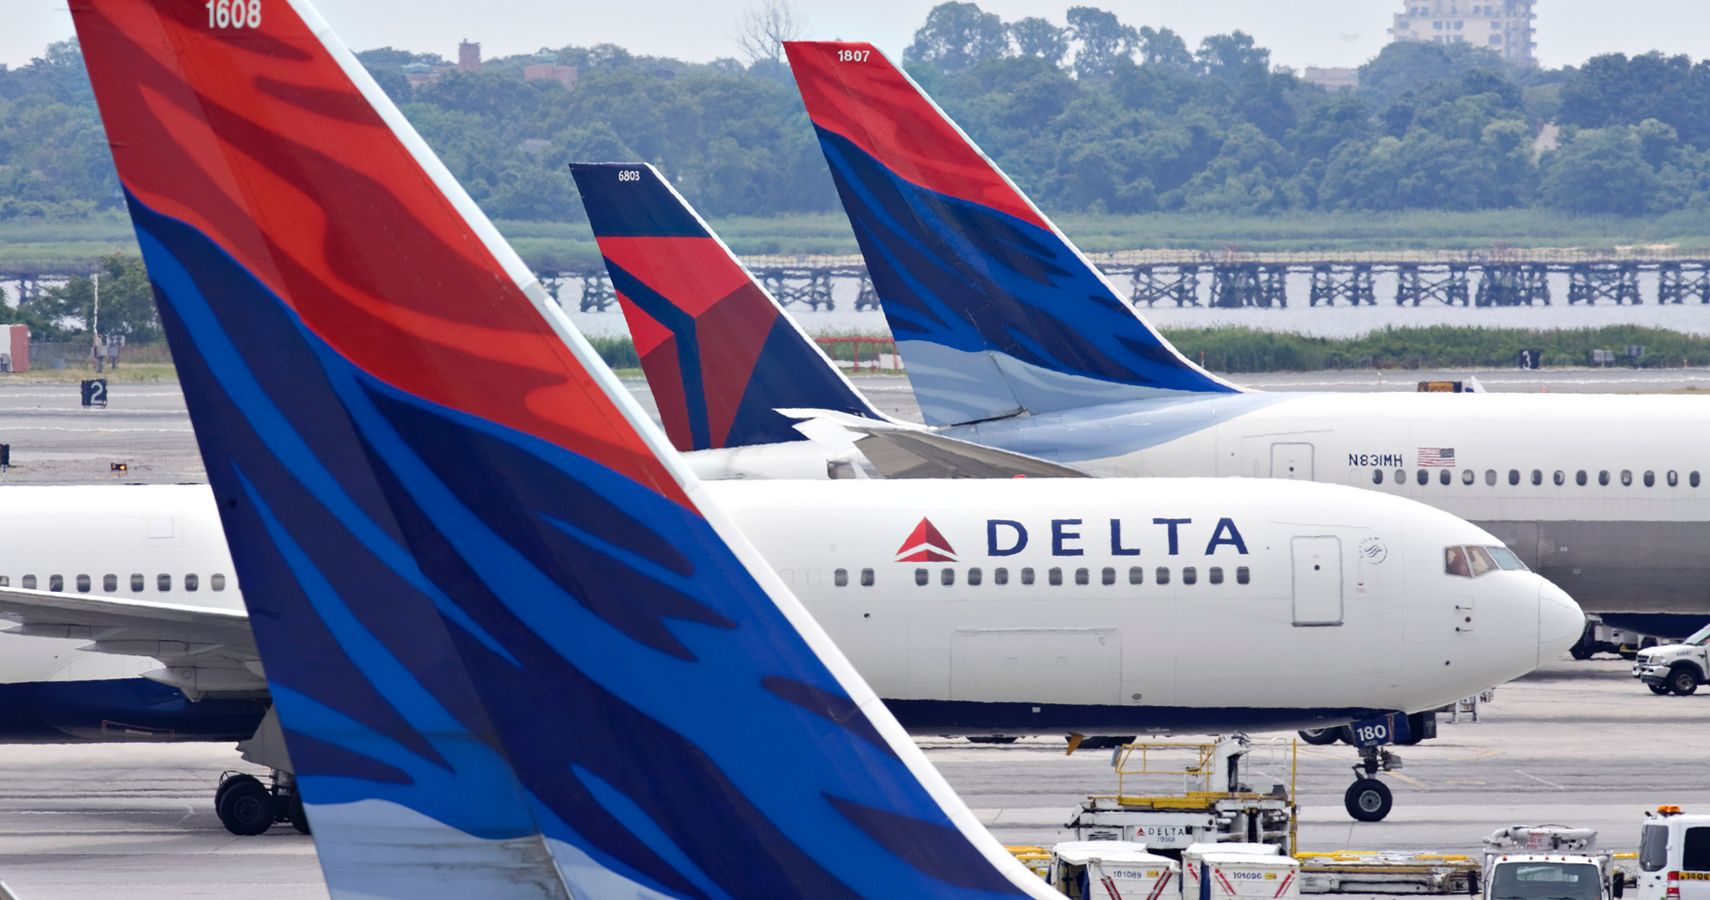 Delta Airlines anuncia mudancas em rotas internacionais para expansao na